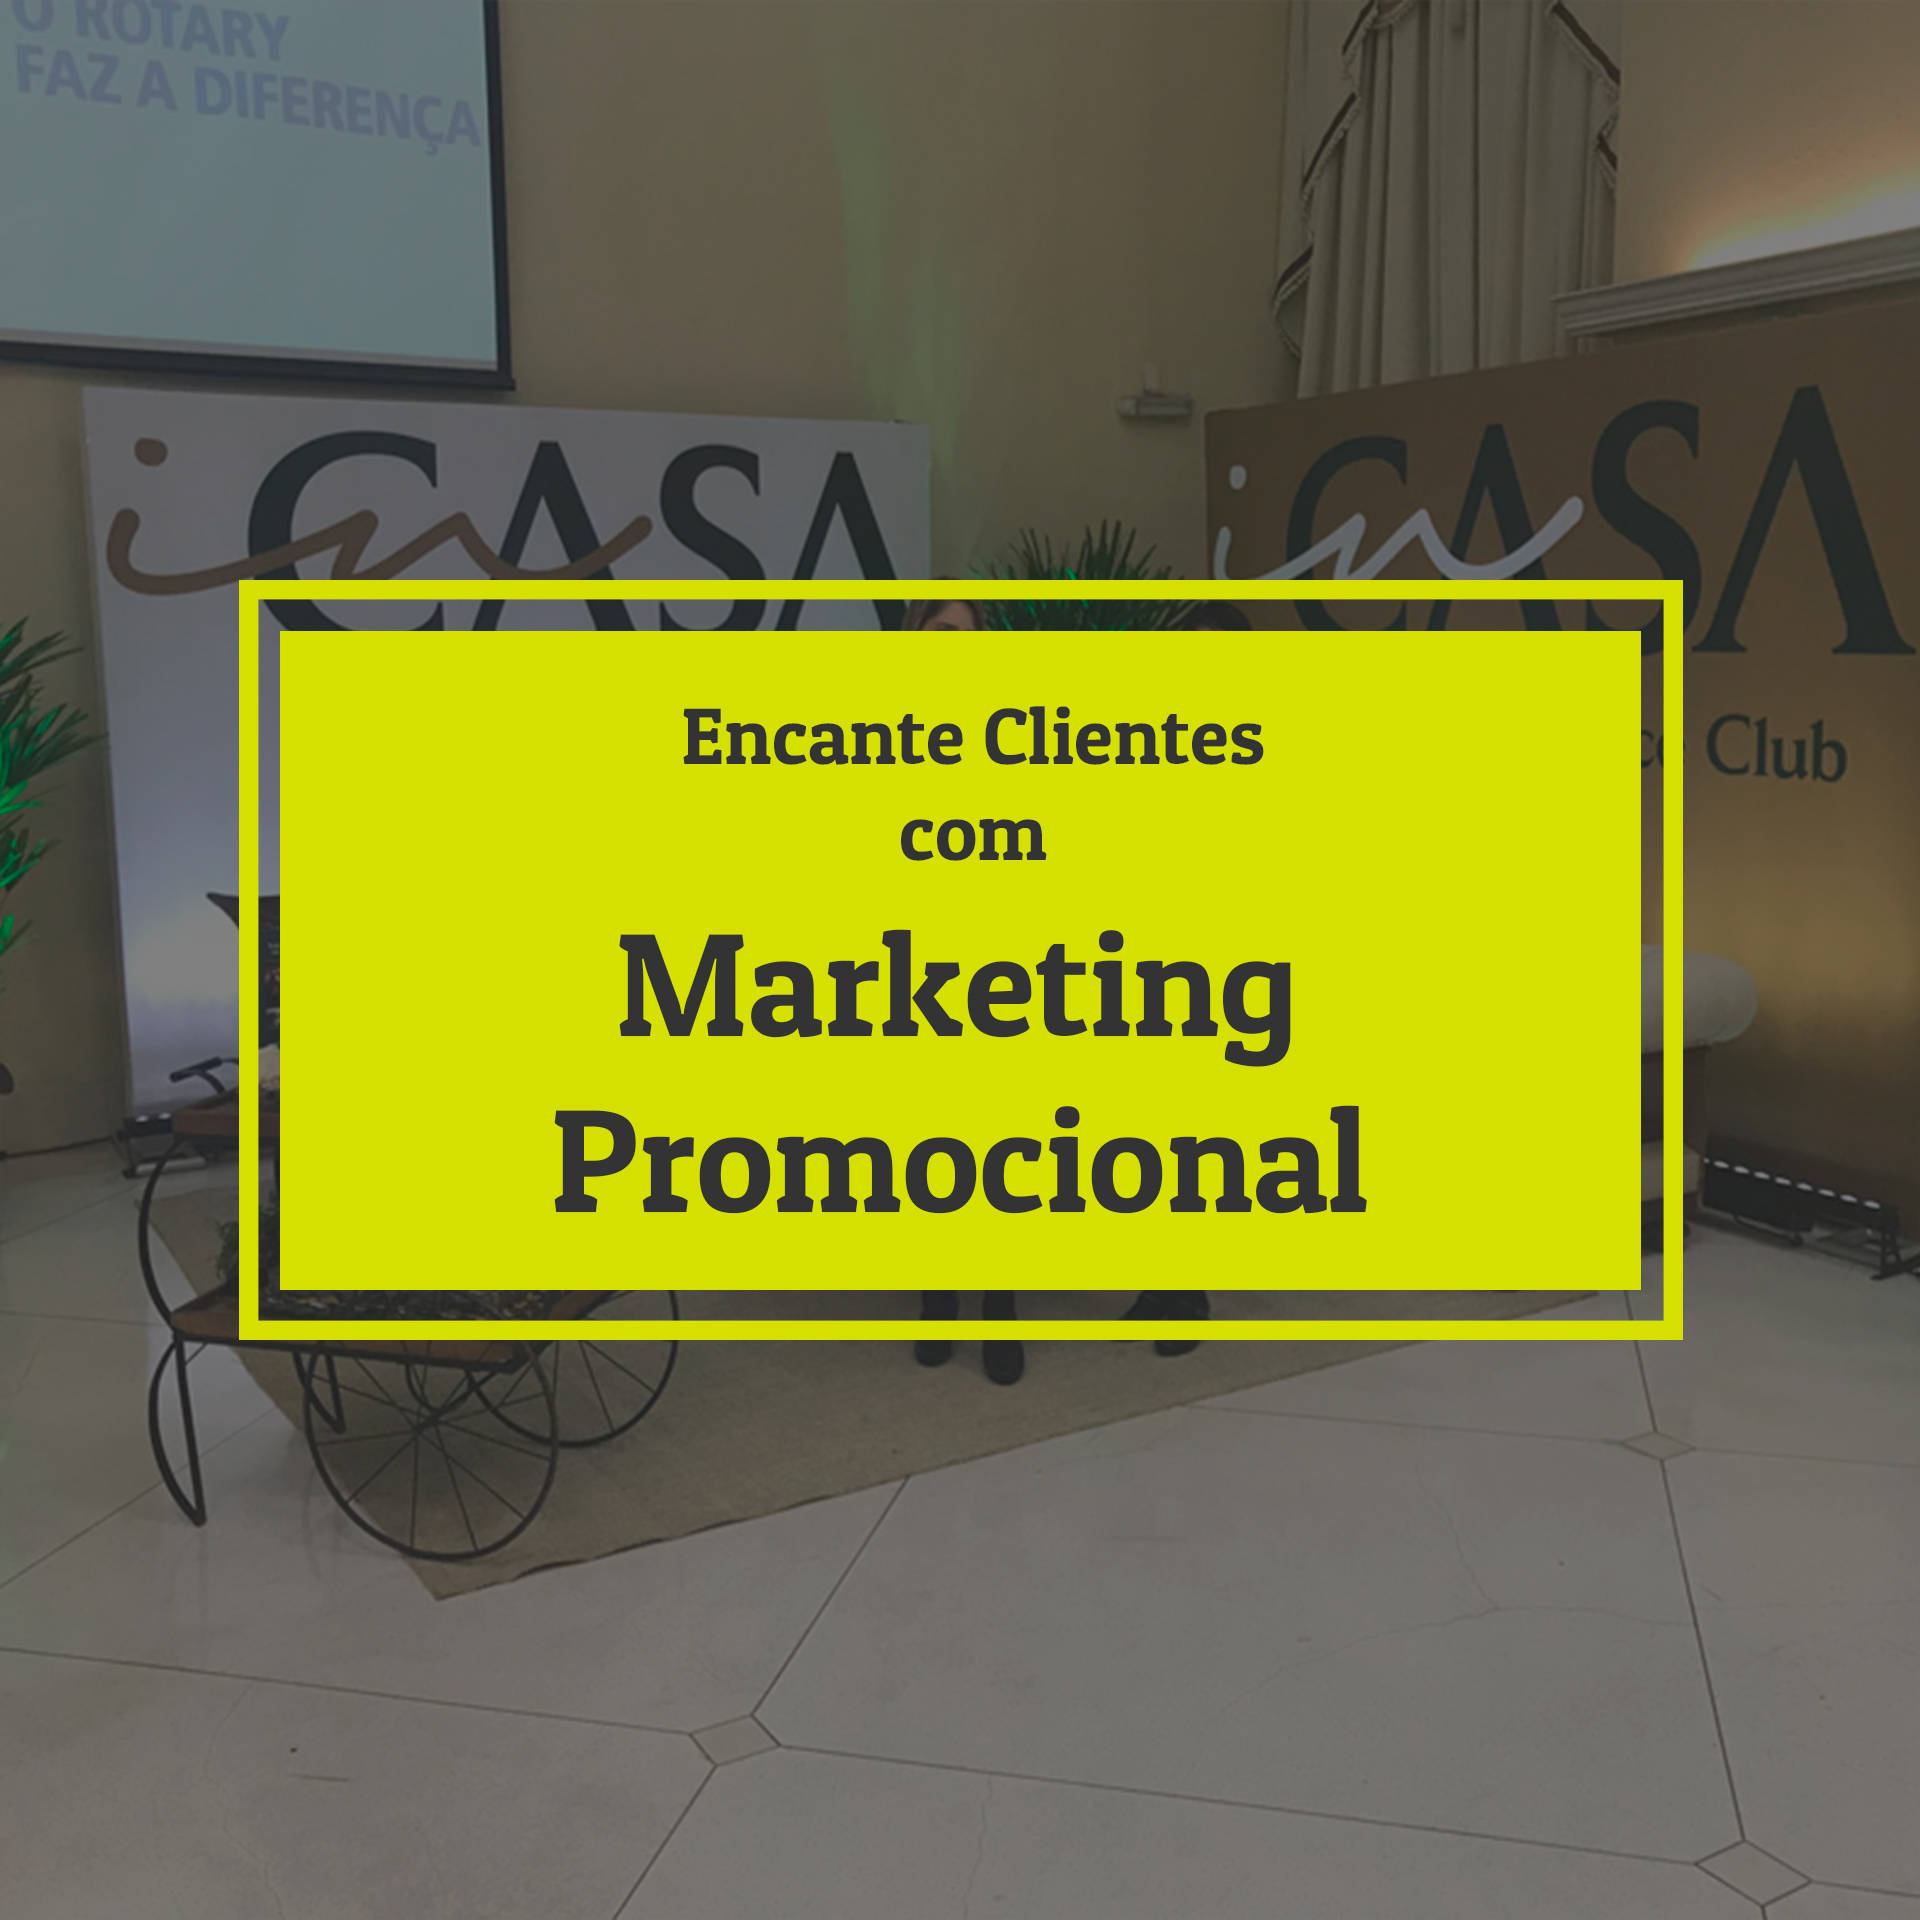 Encante clientes com Marketing Promocional - Como encantar os clientes atravÃ©s de aÃ§Ãµes de Marketing Promocional